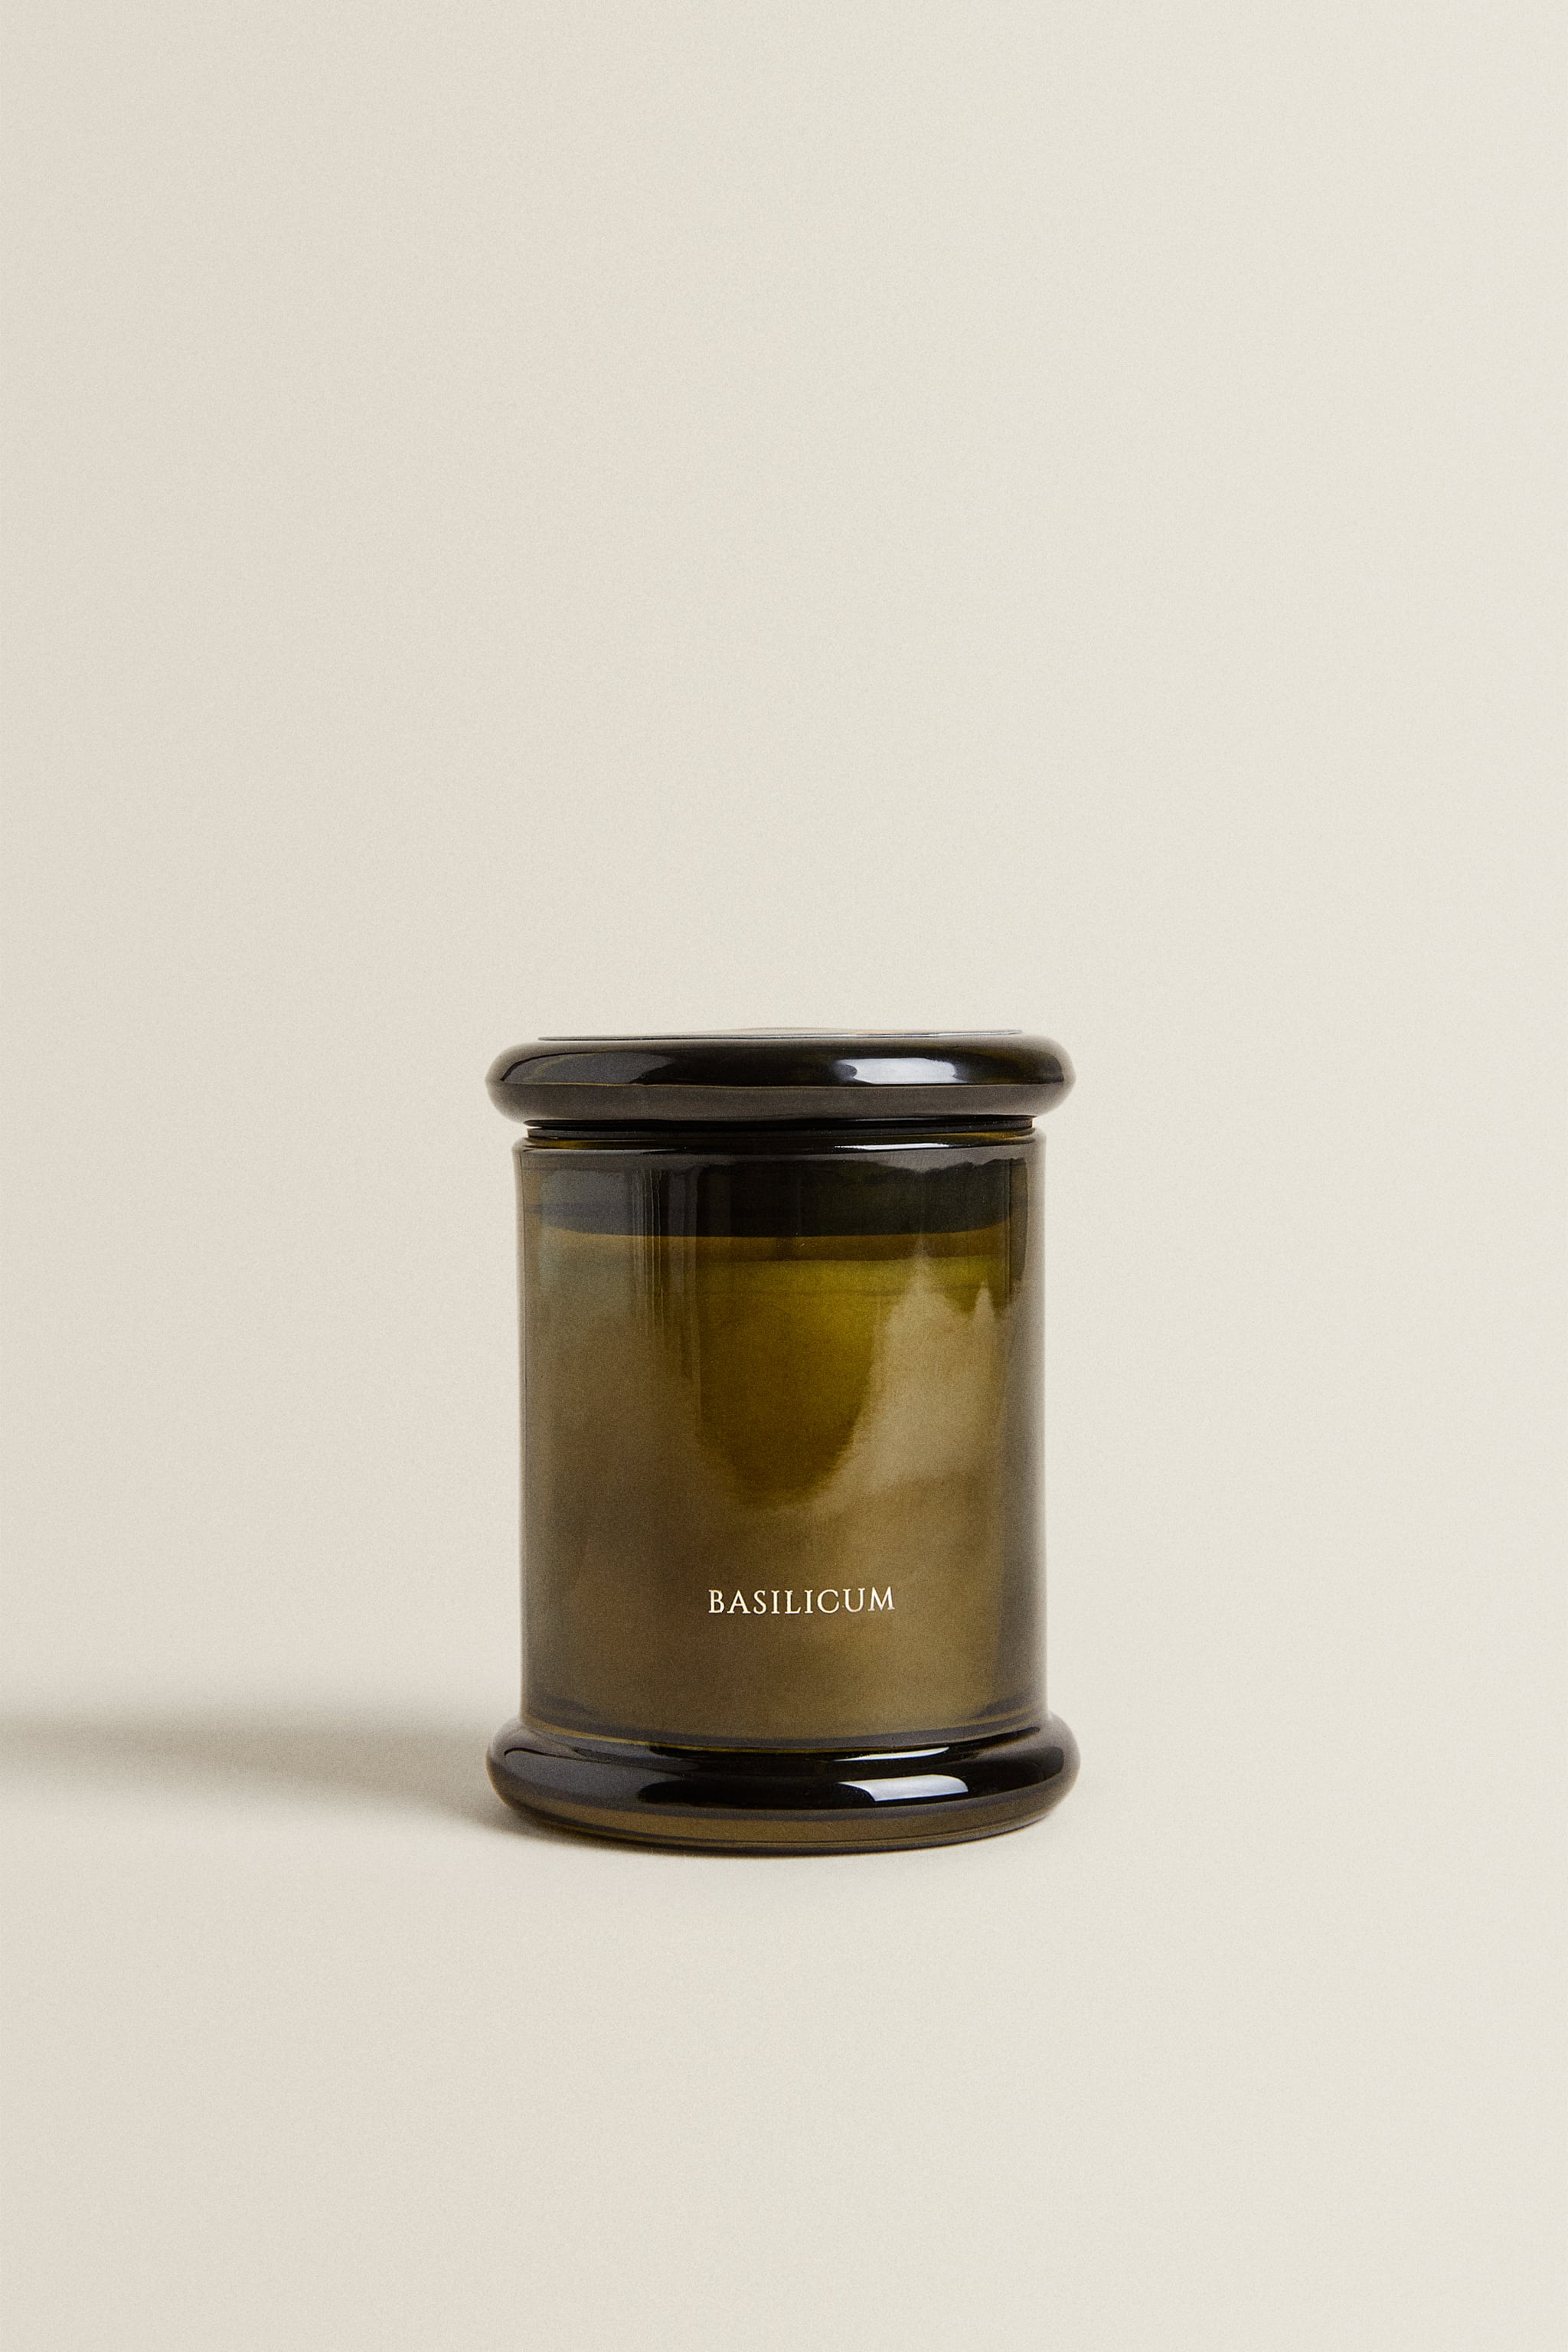 (150 г) ароматическая свеча базиликум Zara, монетный двор просникова ольга николаевна екатеринбургский монетный двор